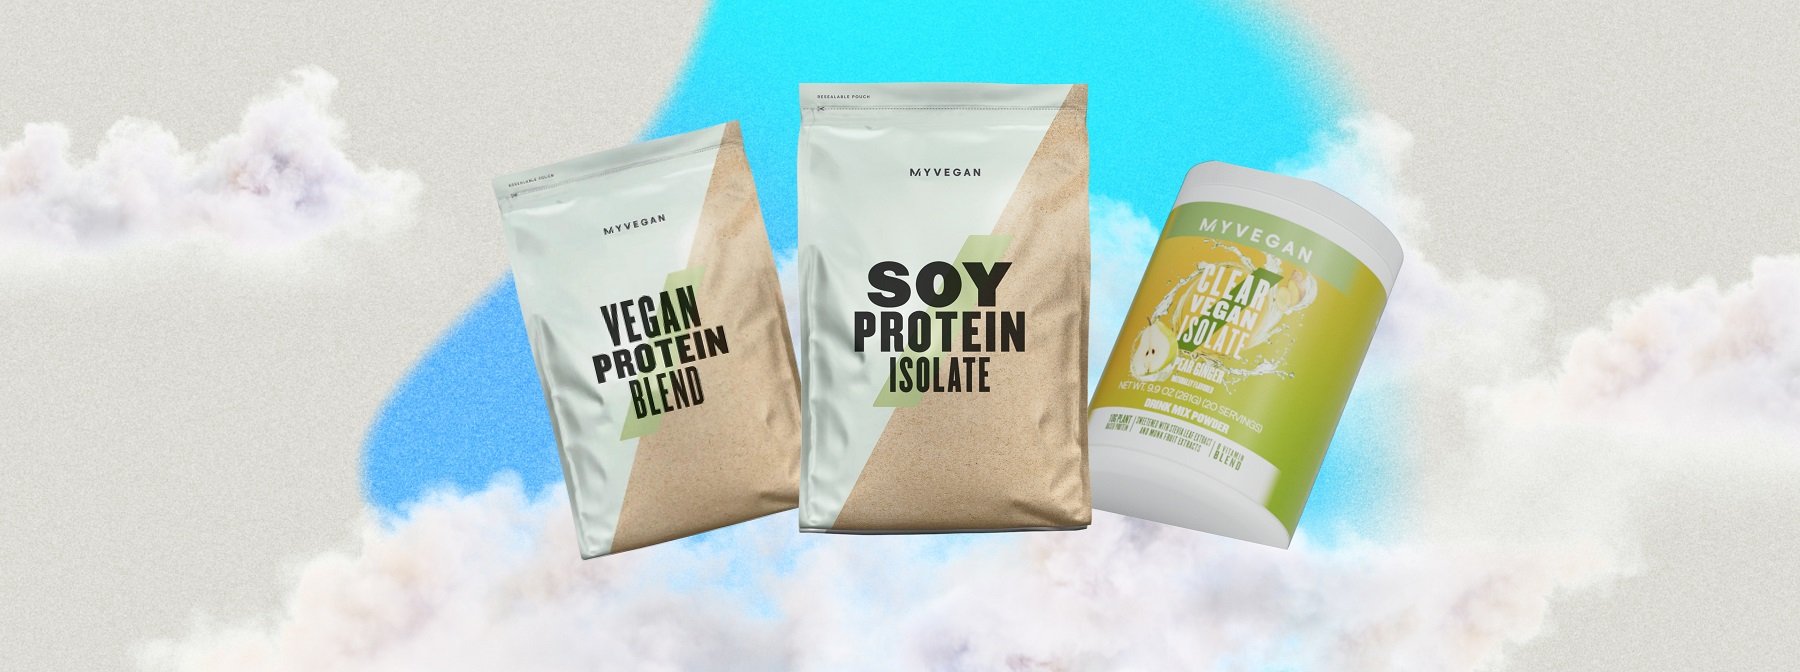 Los mejores sabores de proteínas veganas de Myprotein según nuestros clientes